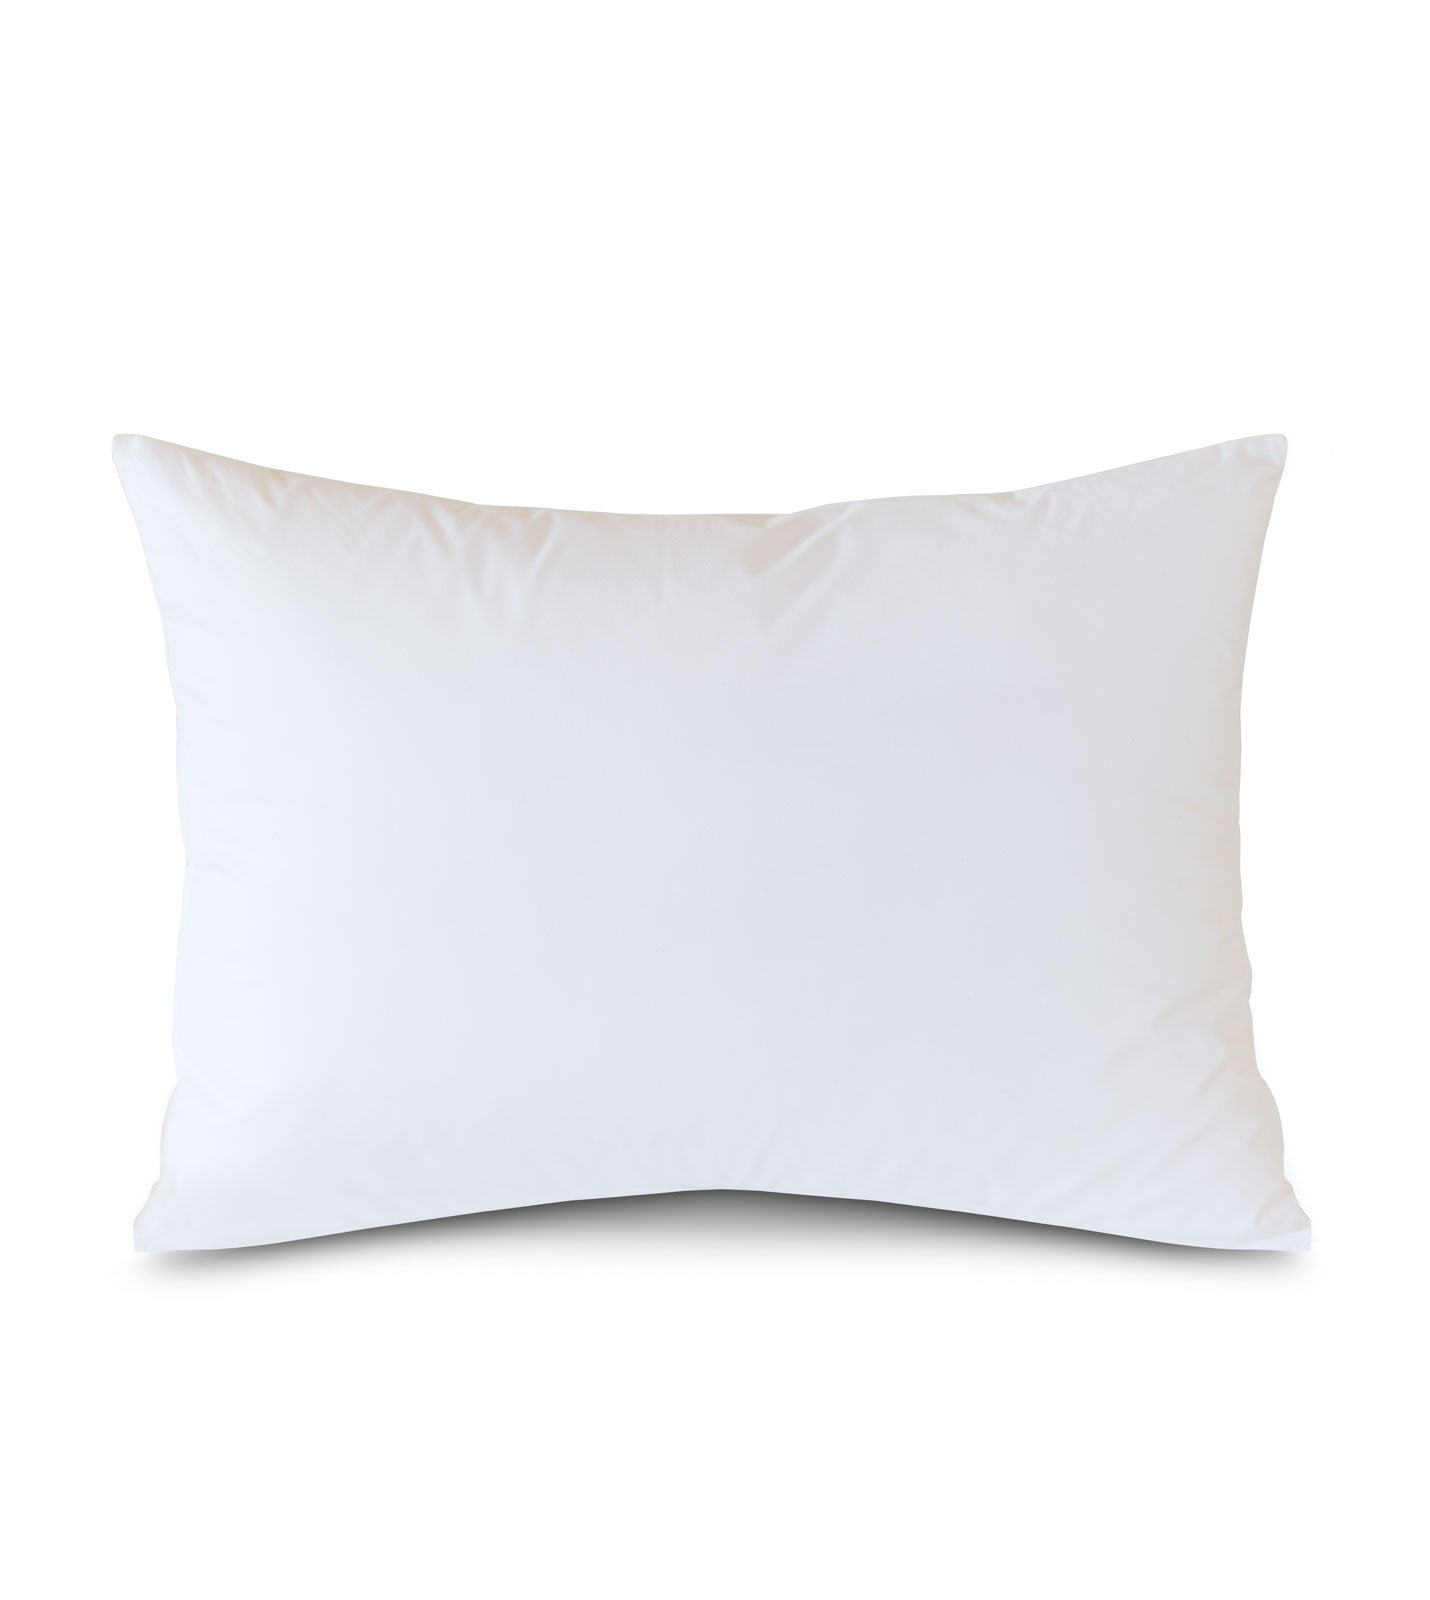 13x22 Pillow Form